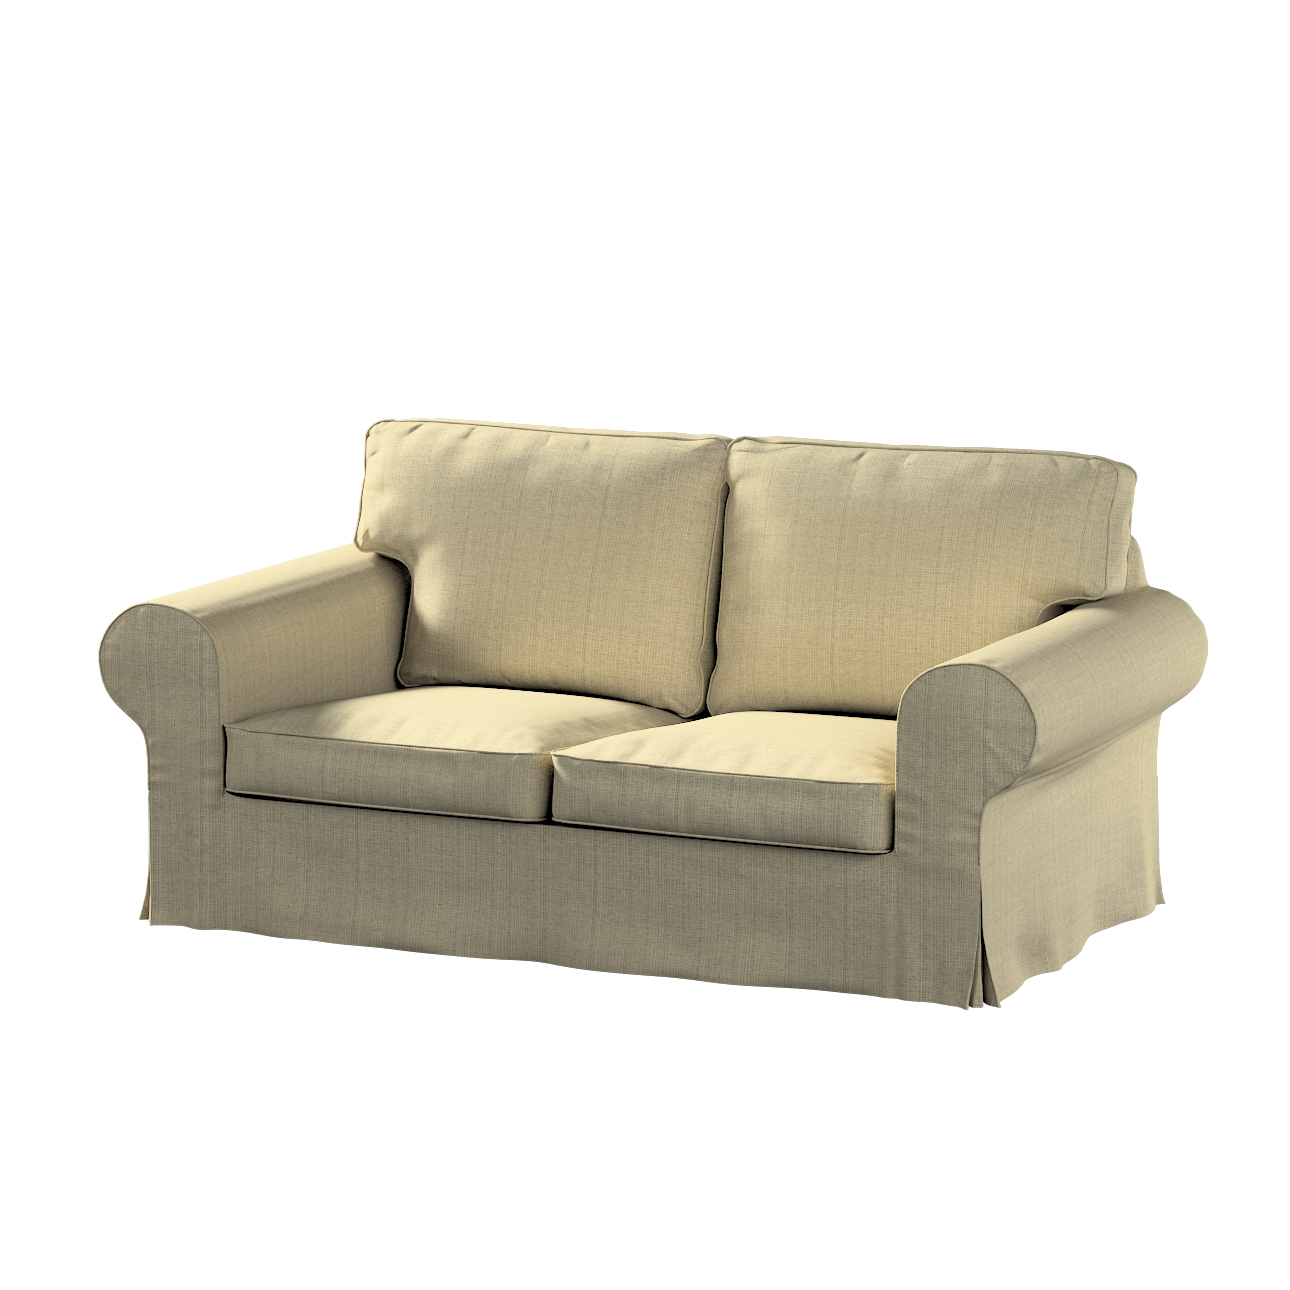 Bezug für Ektorp 2-Sitzer Schlafsofa NEUES Modell, beige-creme, Sofabezug f günstig online kaufen